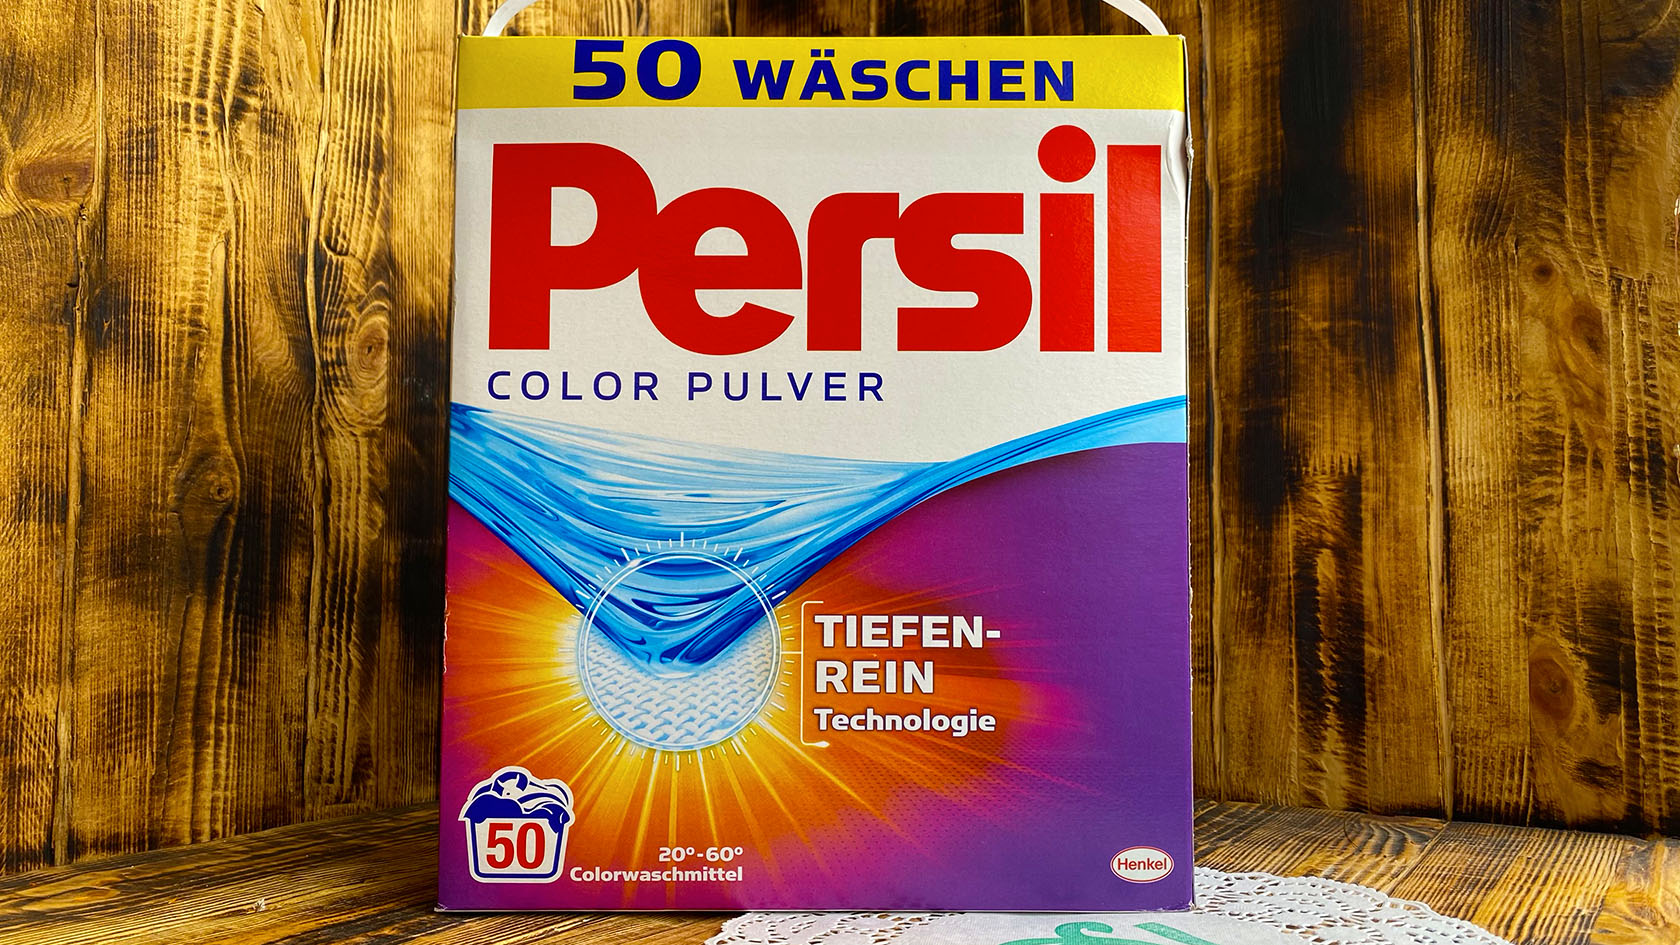 Стиральный порошок Persil Color Pulver производство Германии 4,55 кг